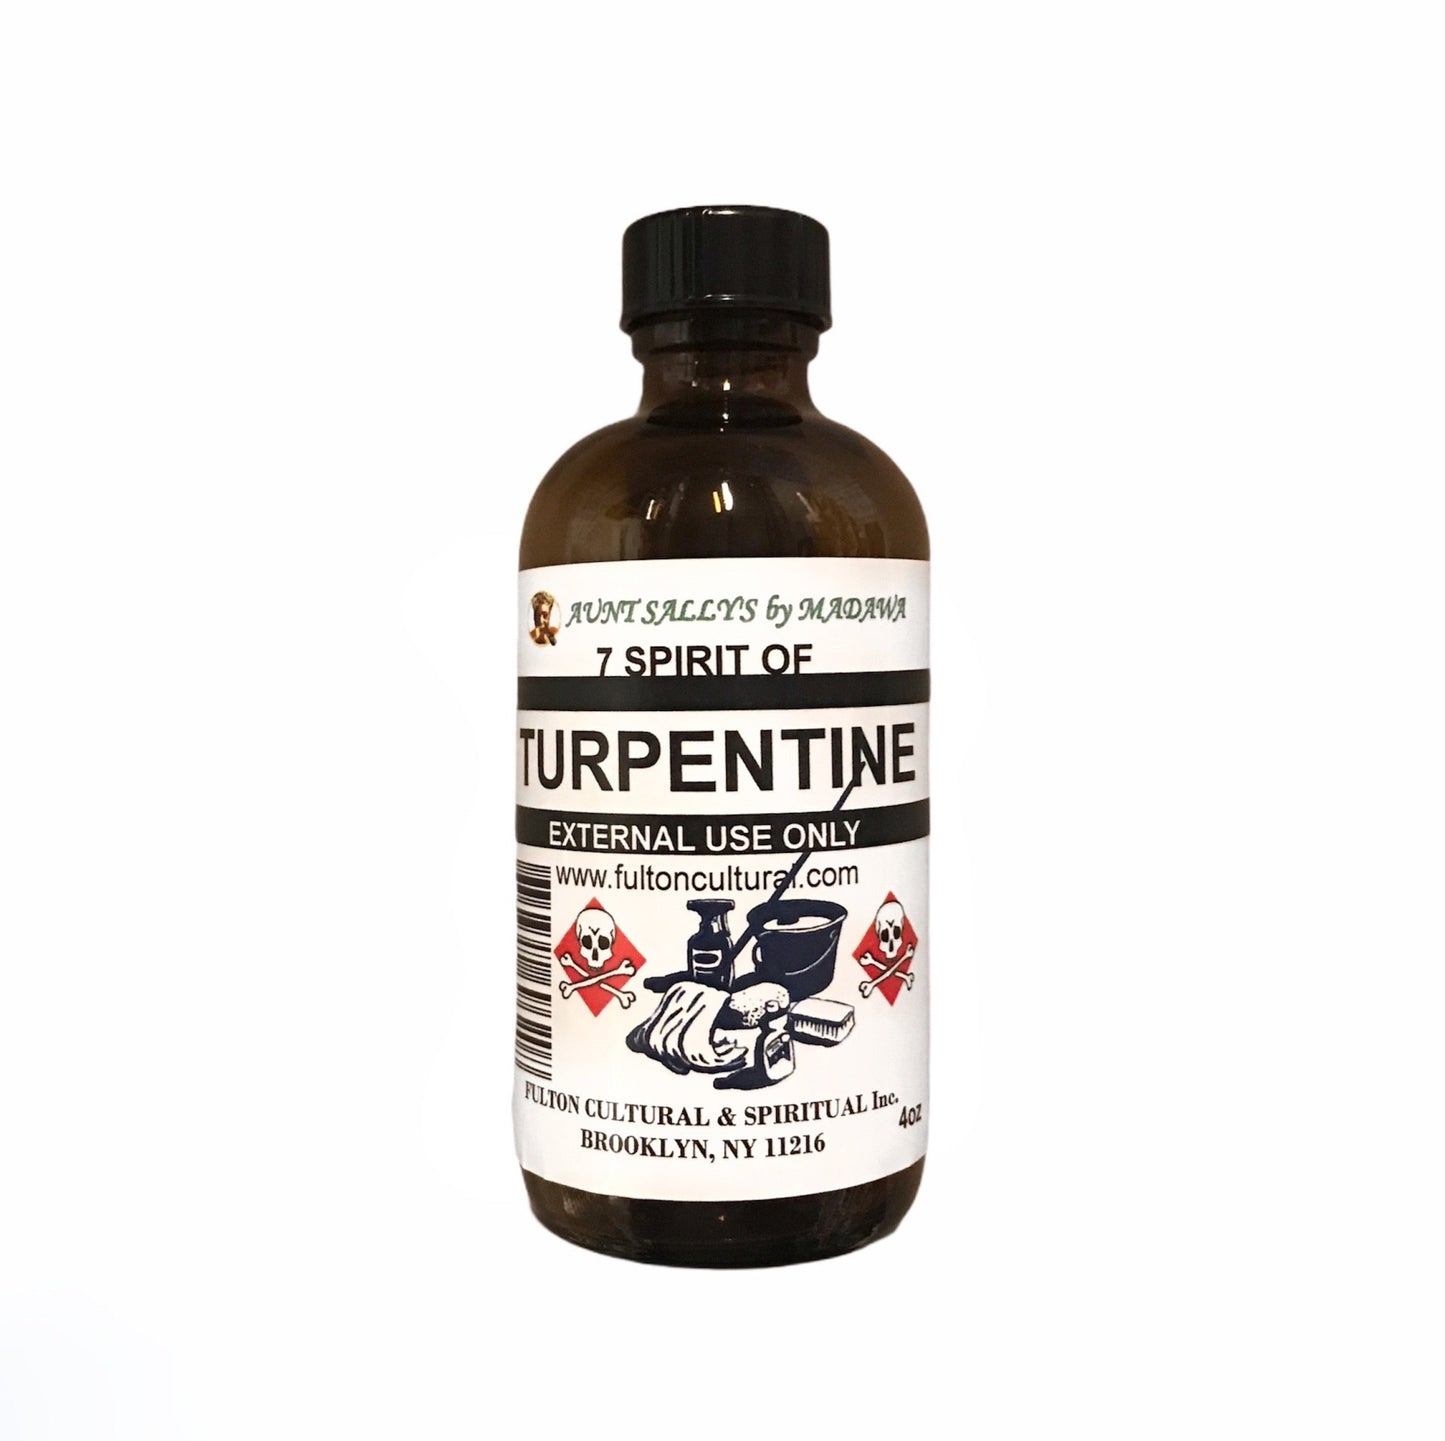 7 Spirits of Turpentine